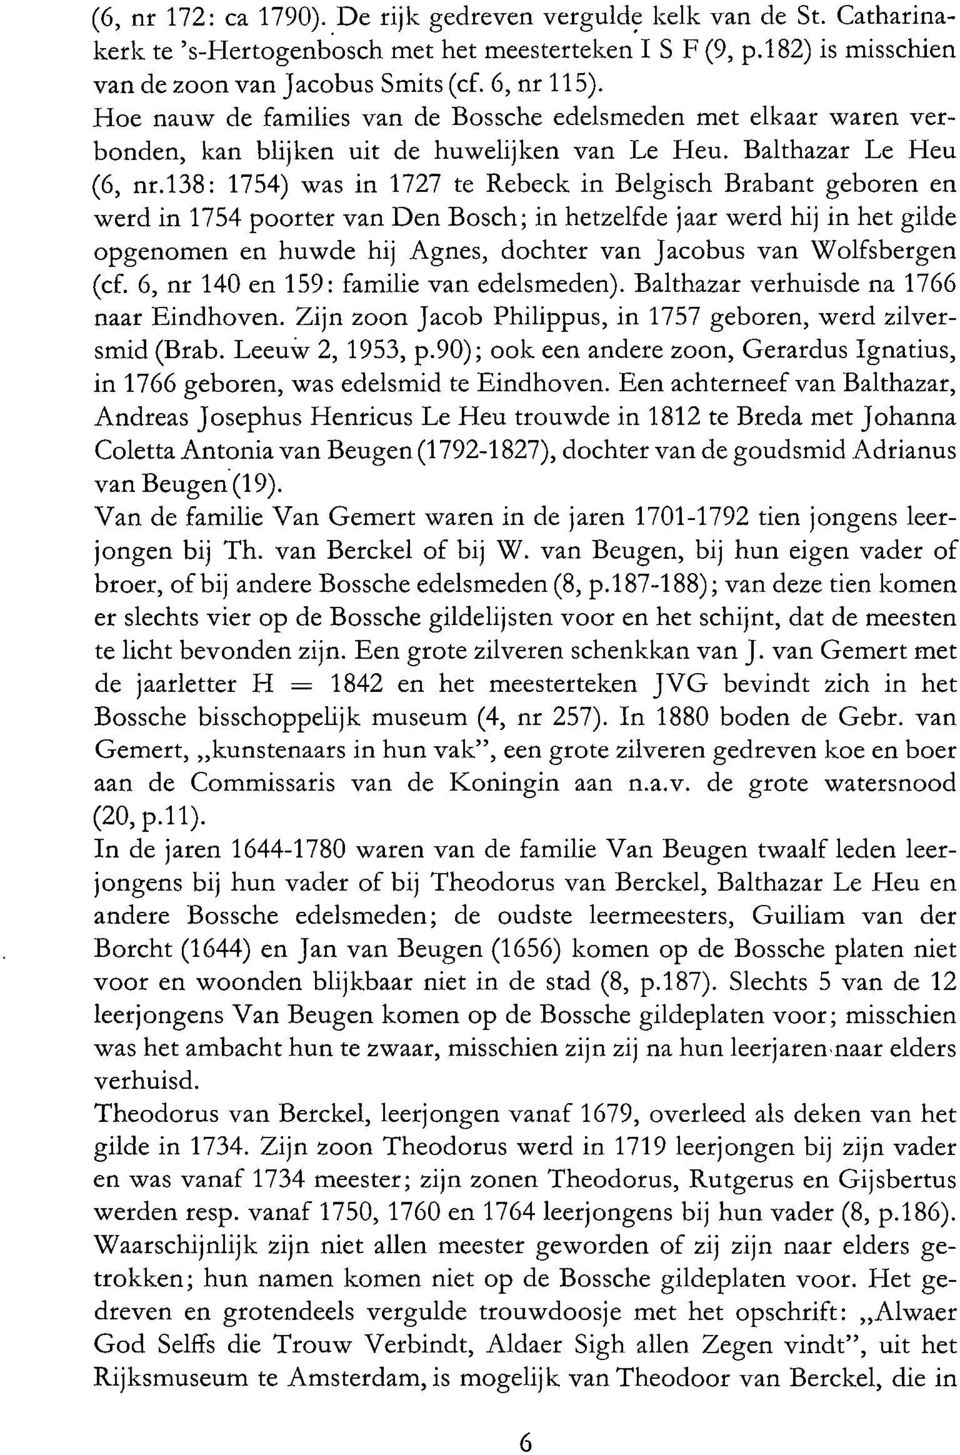 138: 1754) was in 1727 te Rebeck in Belgisch Brabant geboren en werd in 1754 poorter van Den Bosch; in hetzelfde jaar werd hij in het gilde opgenomen en huwde hij Agnes, dochter van Jacobus van